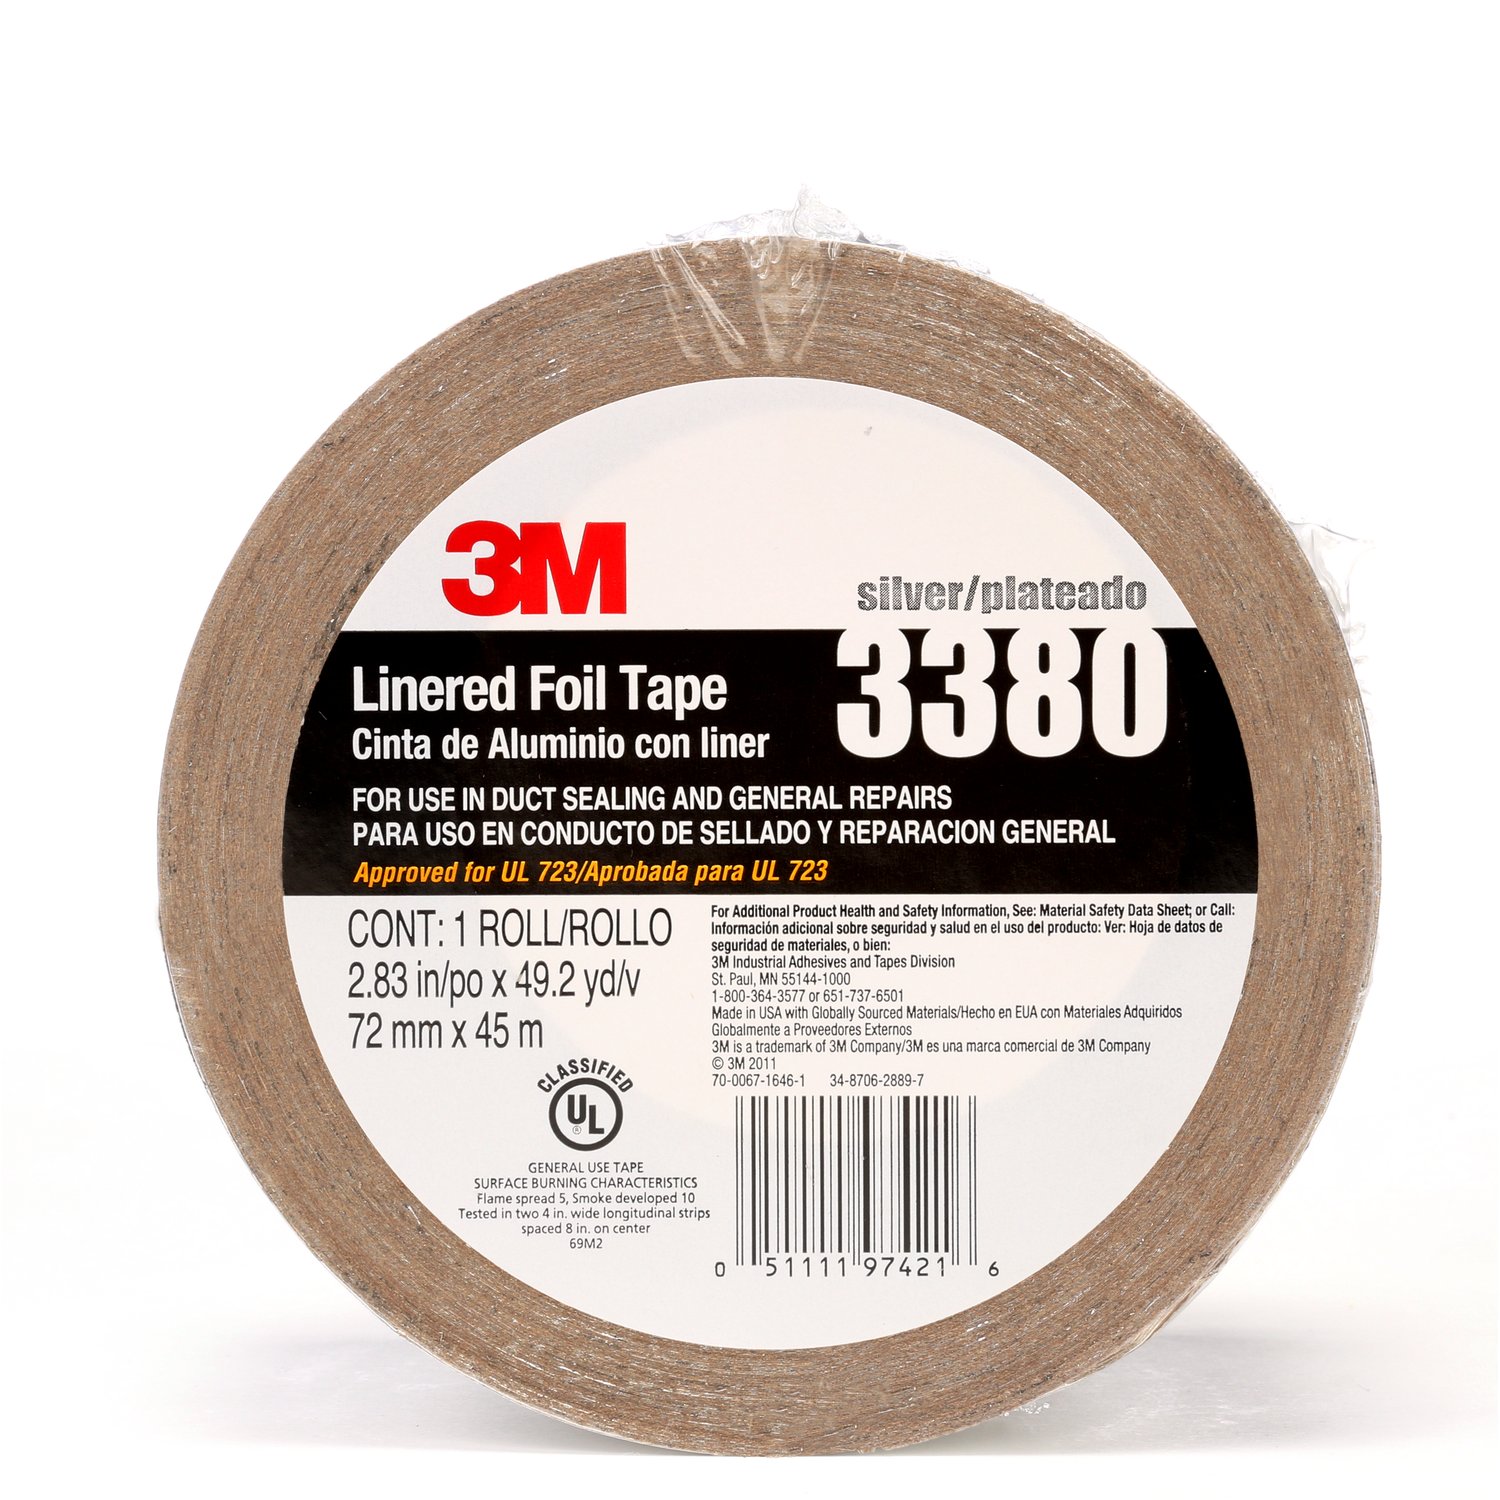 7010375681 - 3M Aluminum Foil Tape 3380, Silver, 72 mm x 45 m, 3.25 mil, 16
Rolls/Case